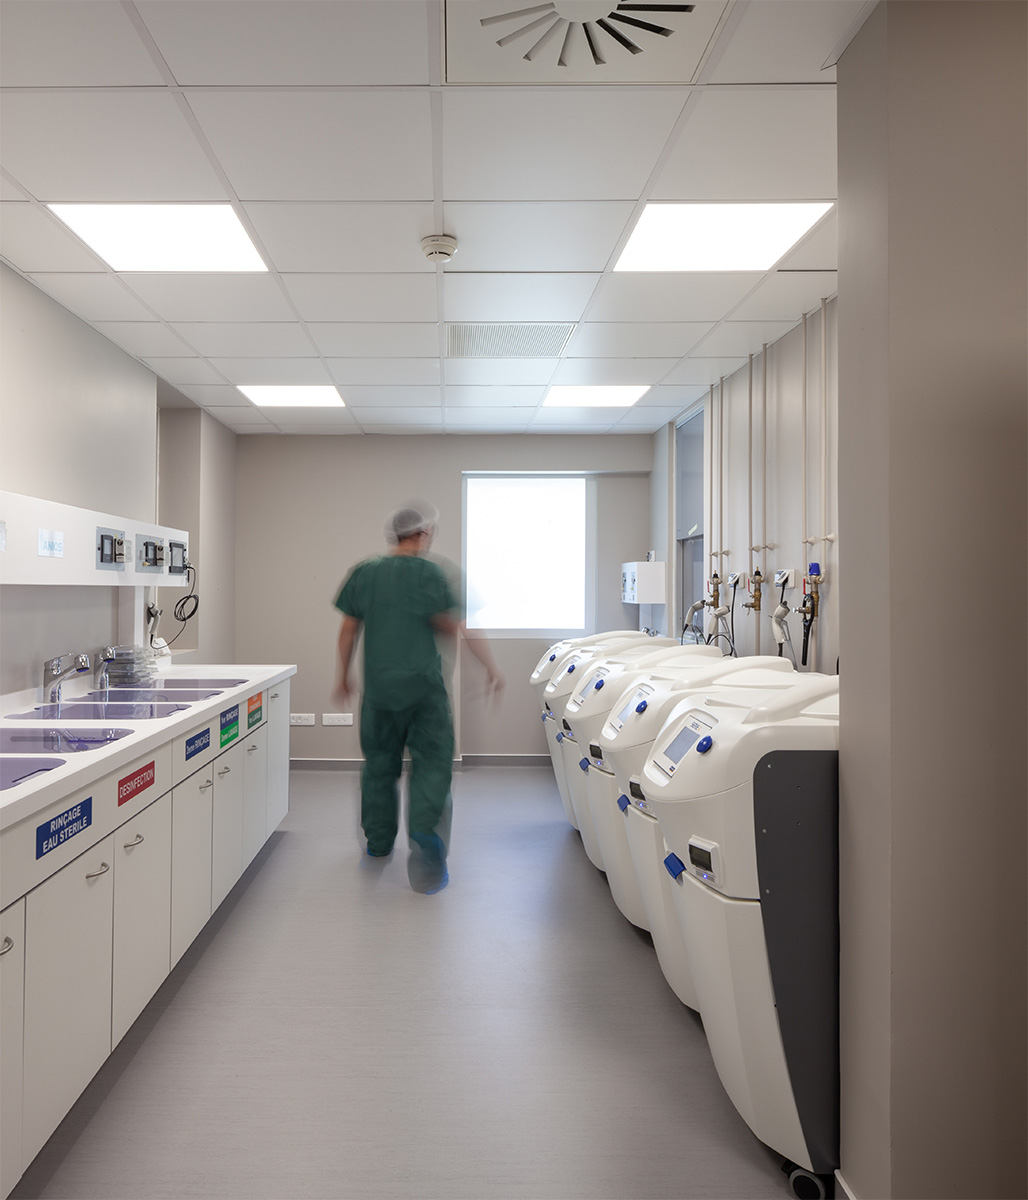 Photographie d'une salle d'endoscopie à la Clinique Claude Bernard à Albi, salle couloir lumineuse avec des murs gris clair